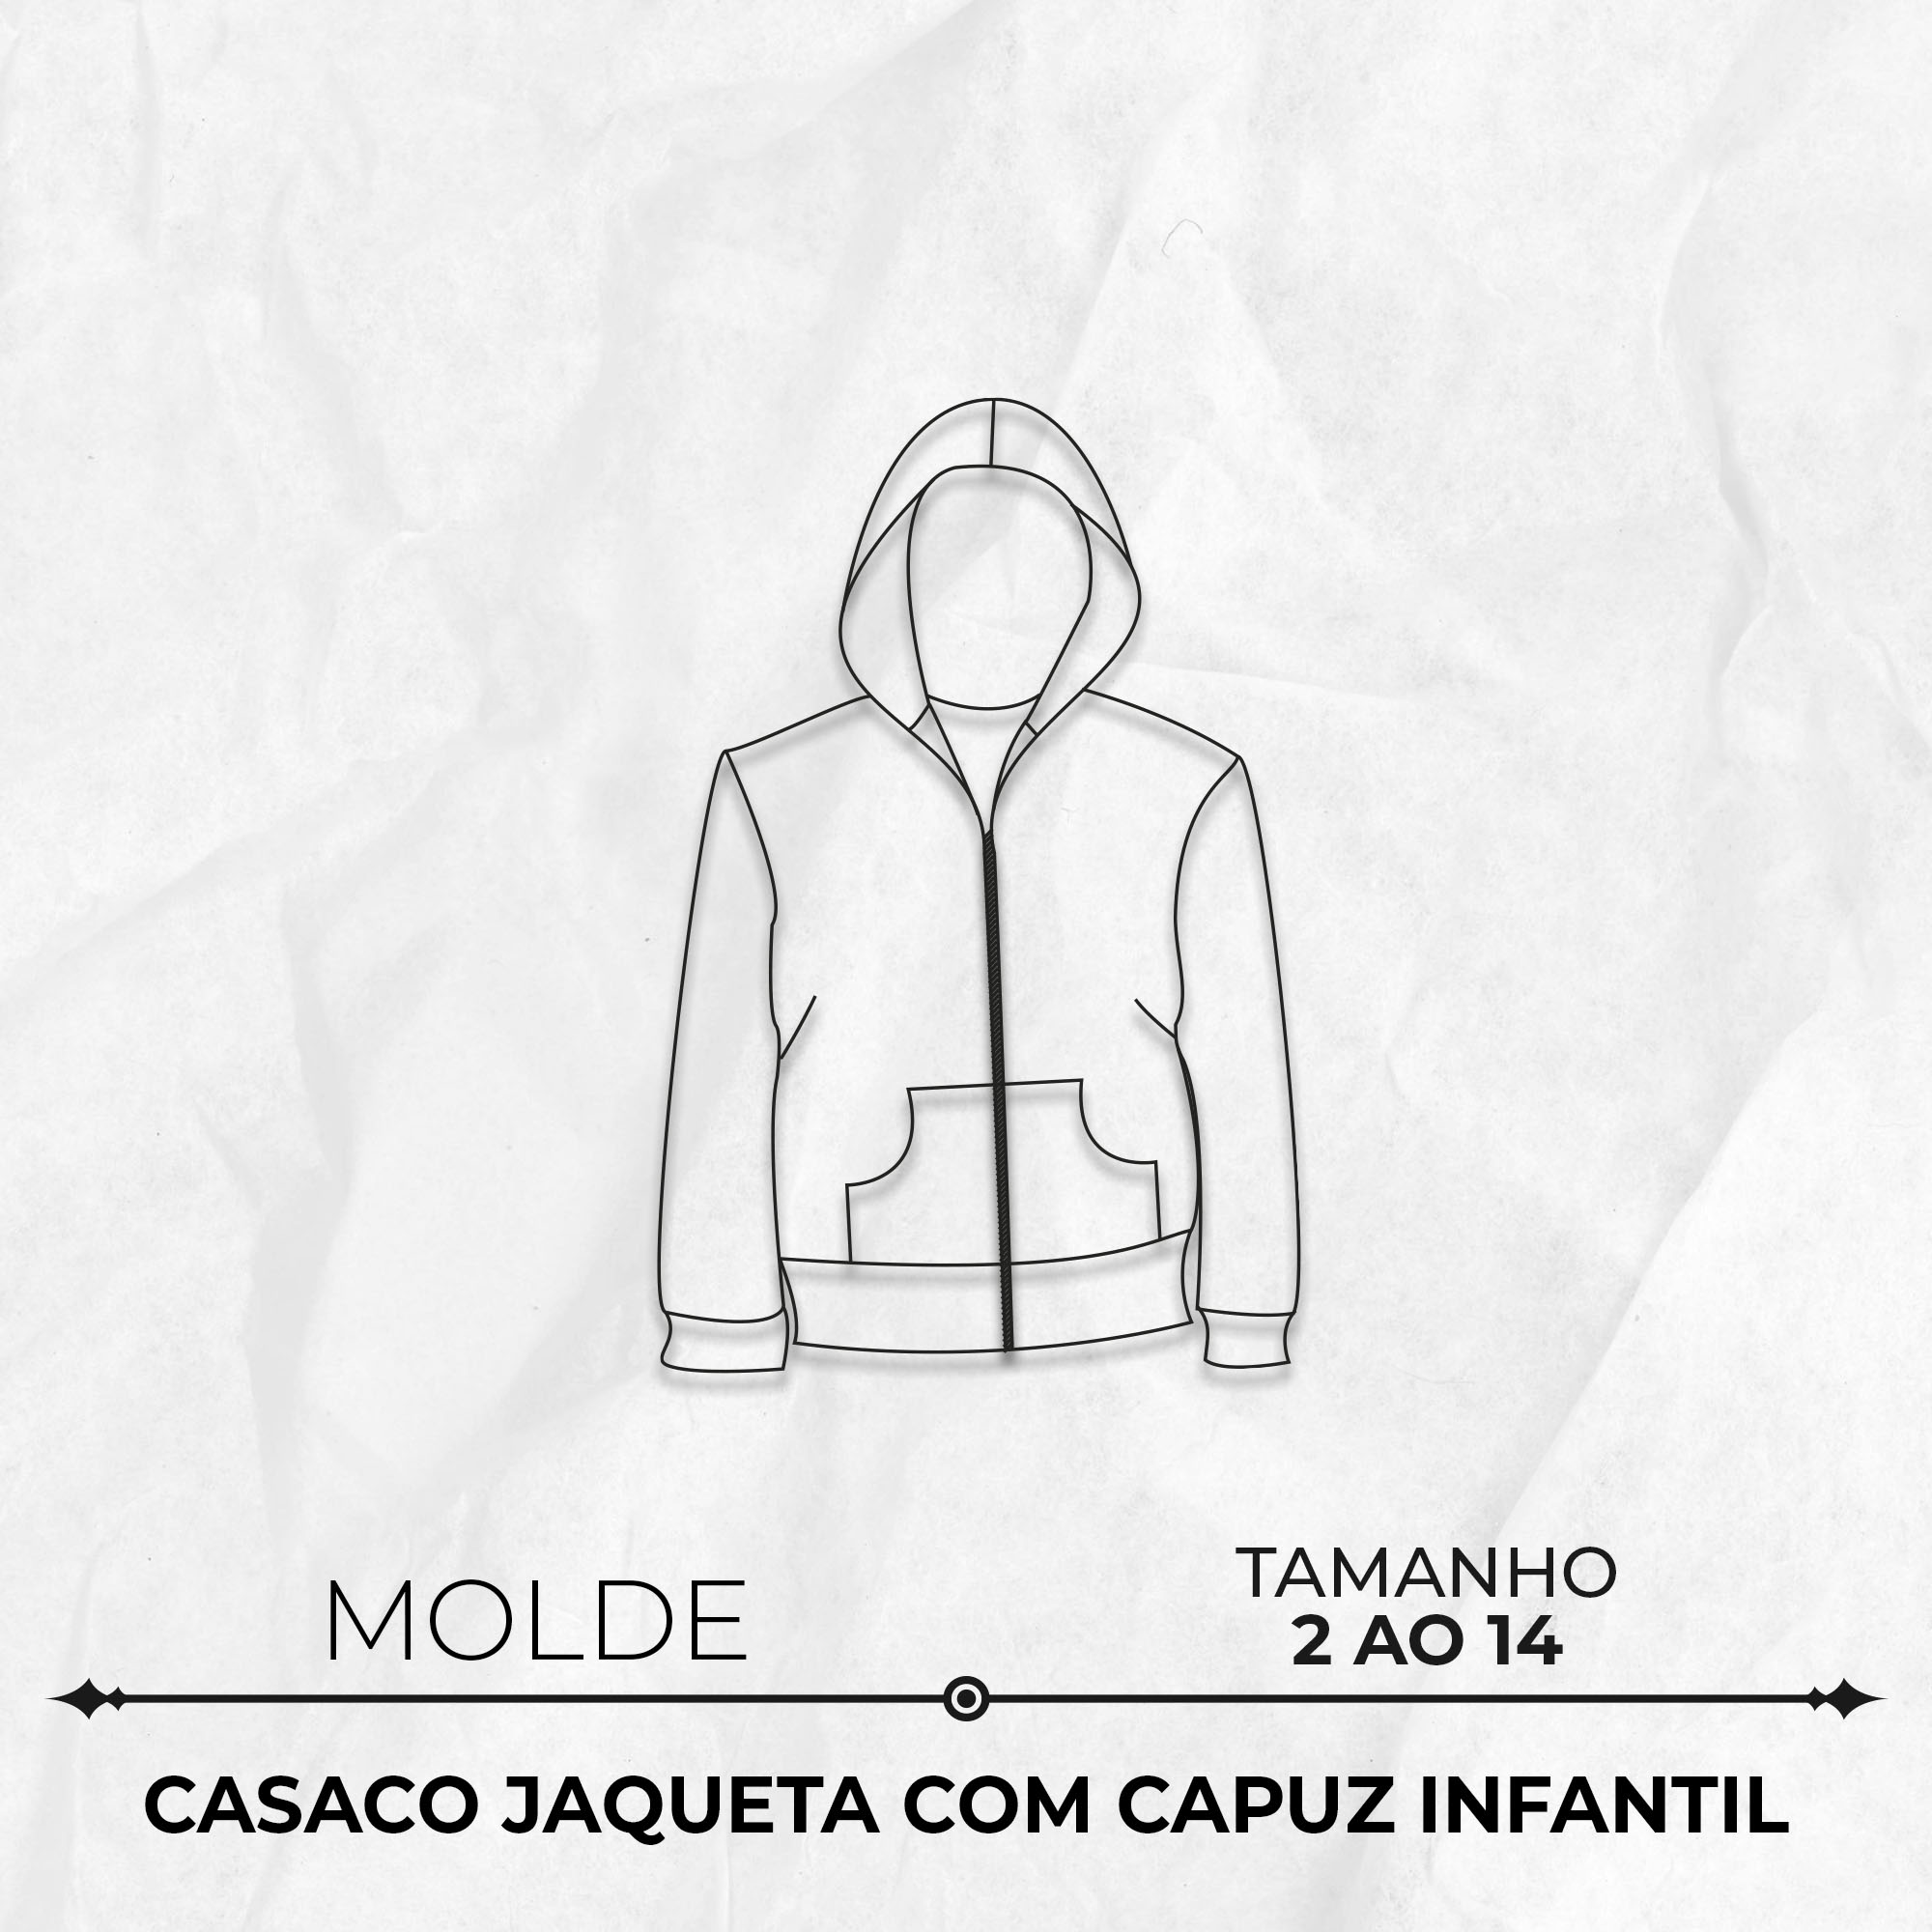 Molde-casaco-jaqueta-com-capuz-infantil-TM-2-ao-14-Ref-20588-capa